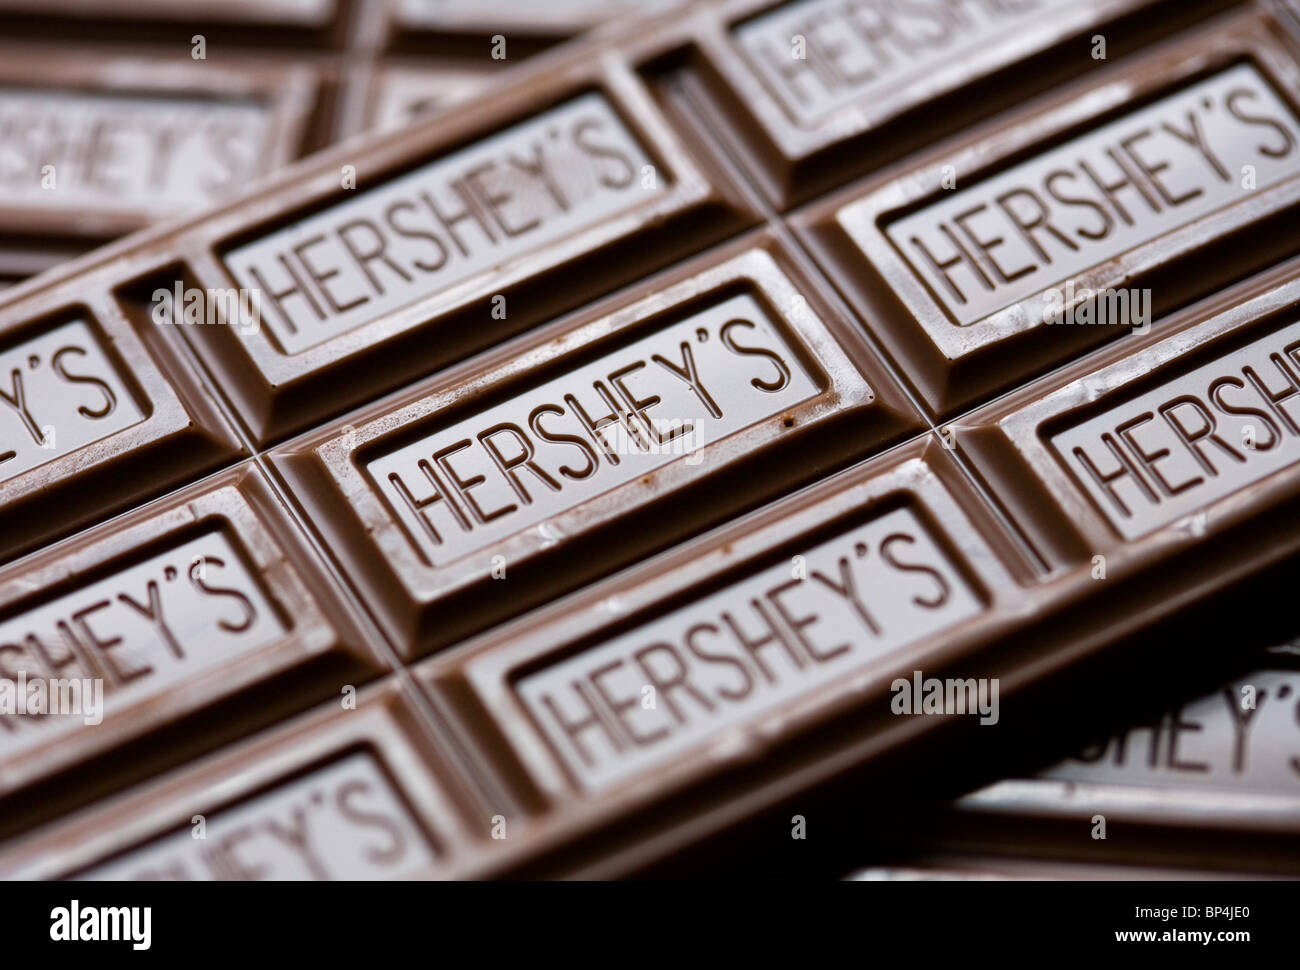 Hershey's Chocolate Bars.  Stock Photo